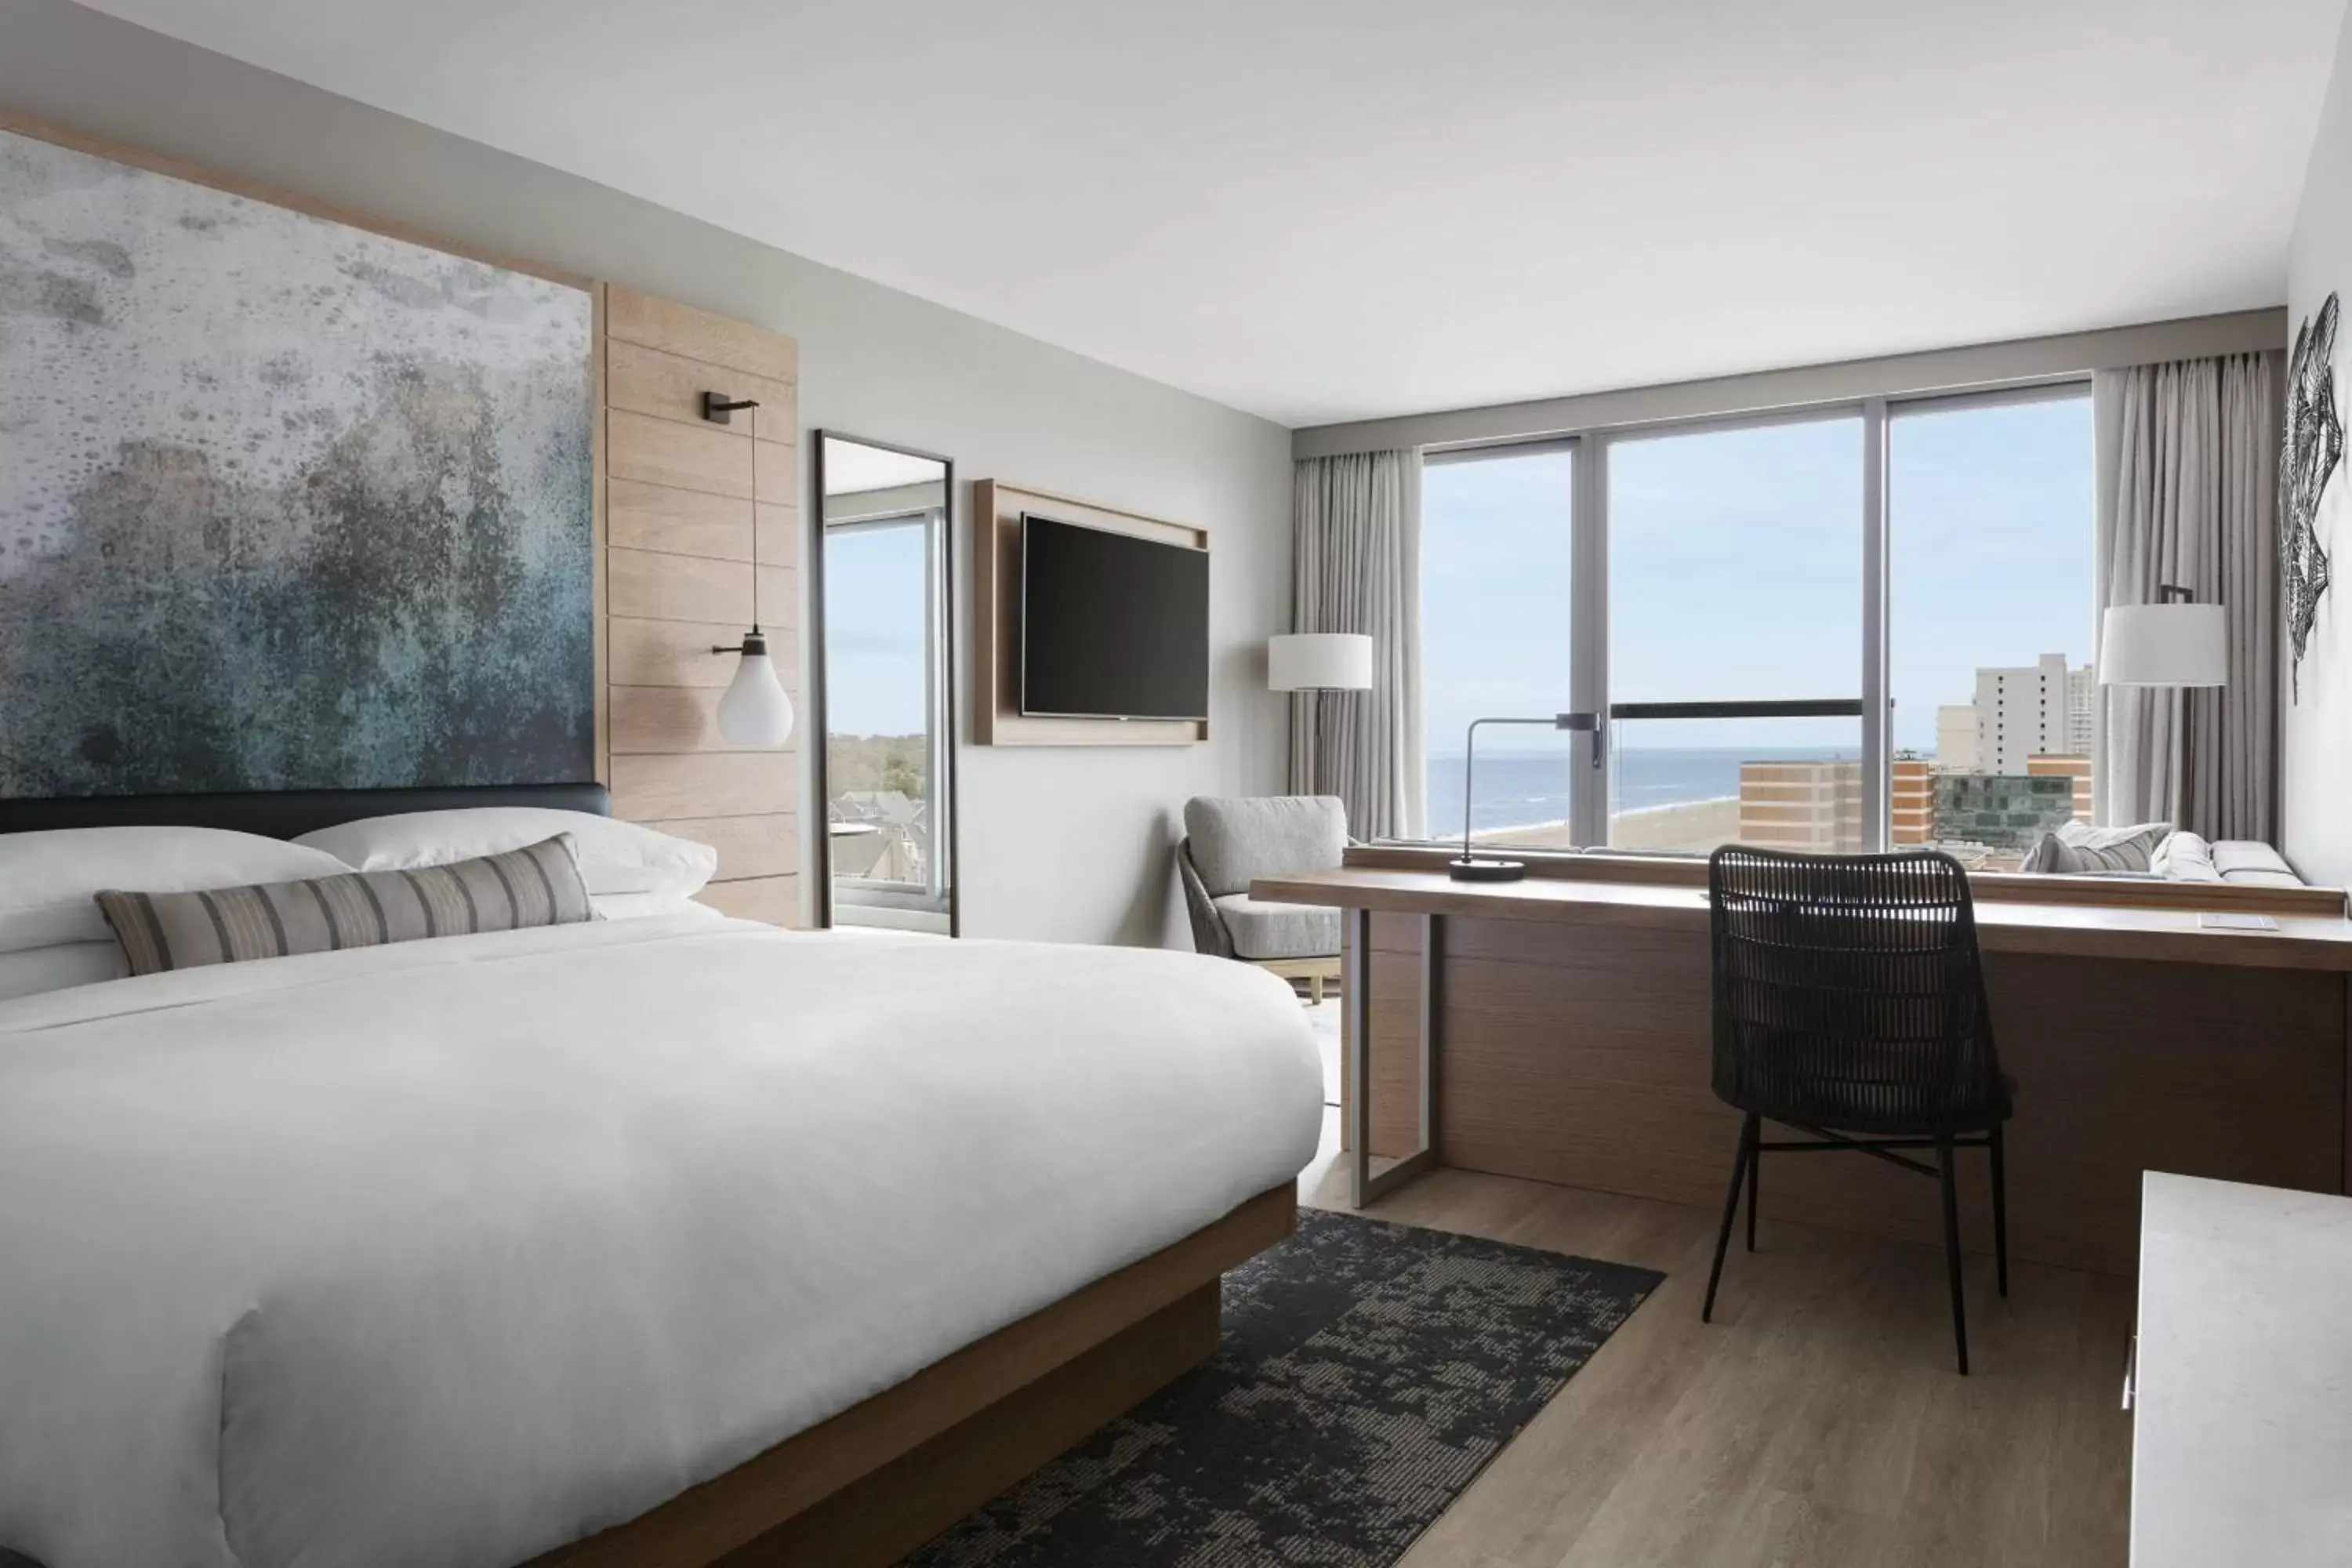 Bedroom in Marriott Virginia Beach Oceanfront Resort